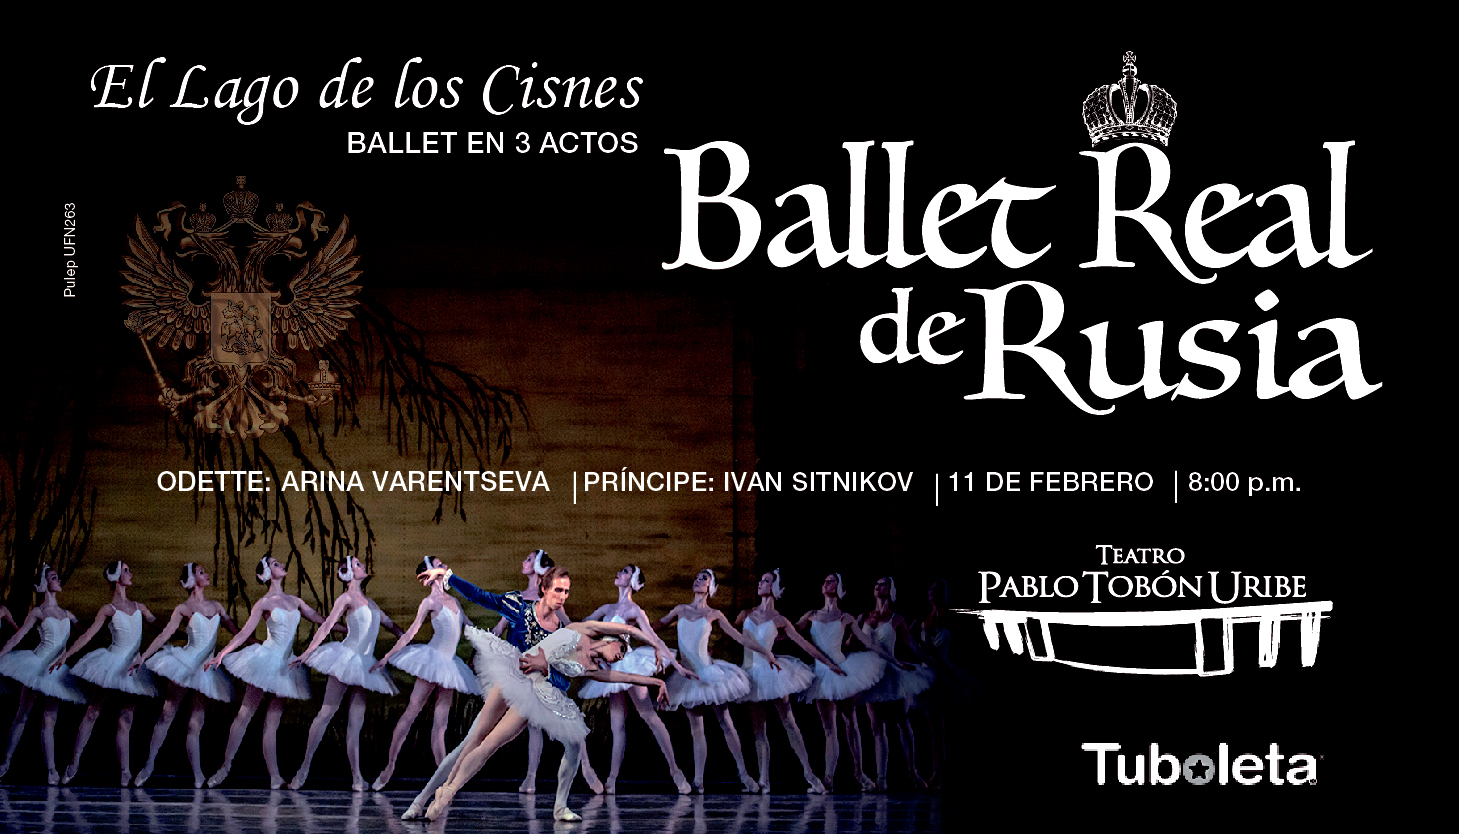 ballet real de rusia Web imagen miniatura evento noticia 01